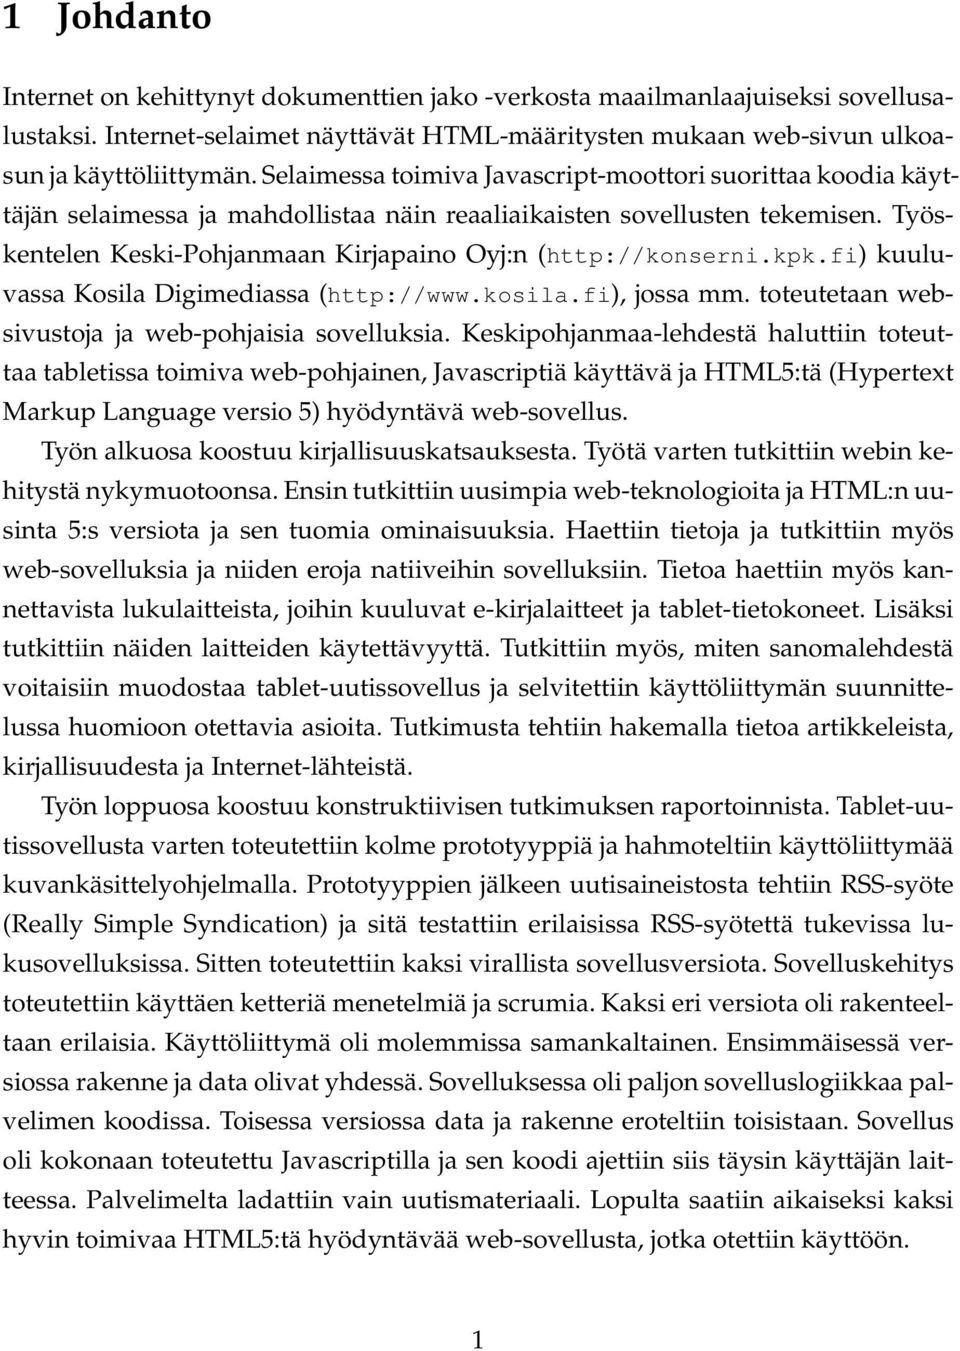 Työskentelen Keski-Pohjanmaan Kirjapaino Oyj:n (http://konserni.kpk.fi) kuuluvassa Kosila Digimediassa (http://www.kosila.fi), jossa mm. toteutetaan websivustoja ja web-pohjaisia sovelluksia.